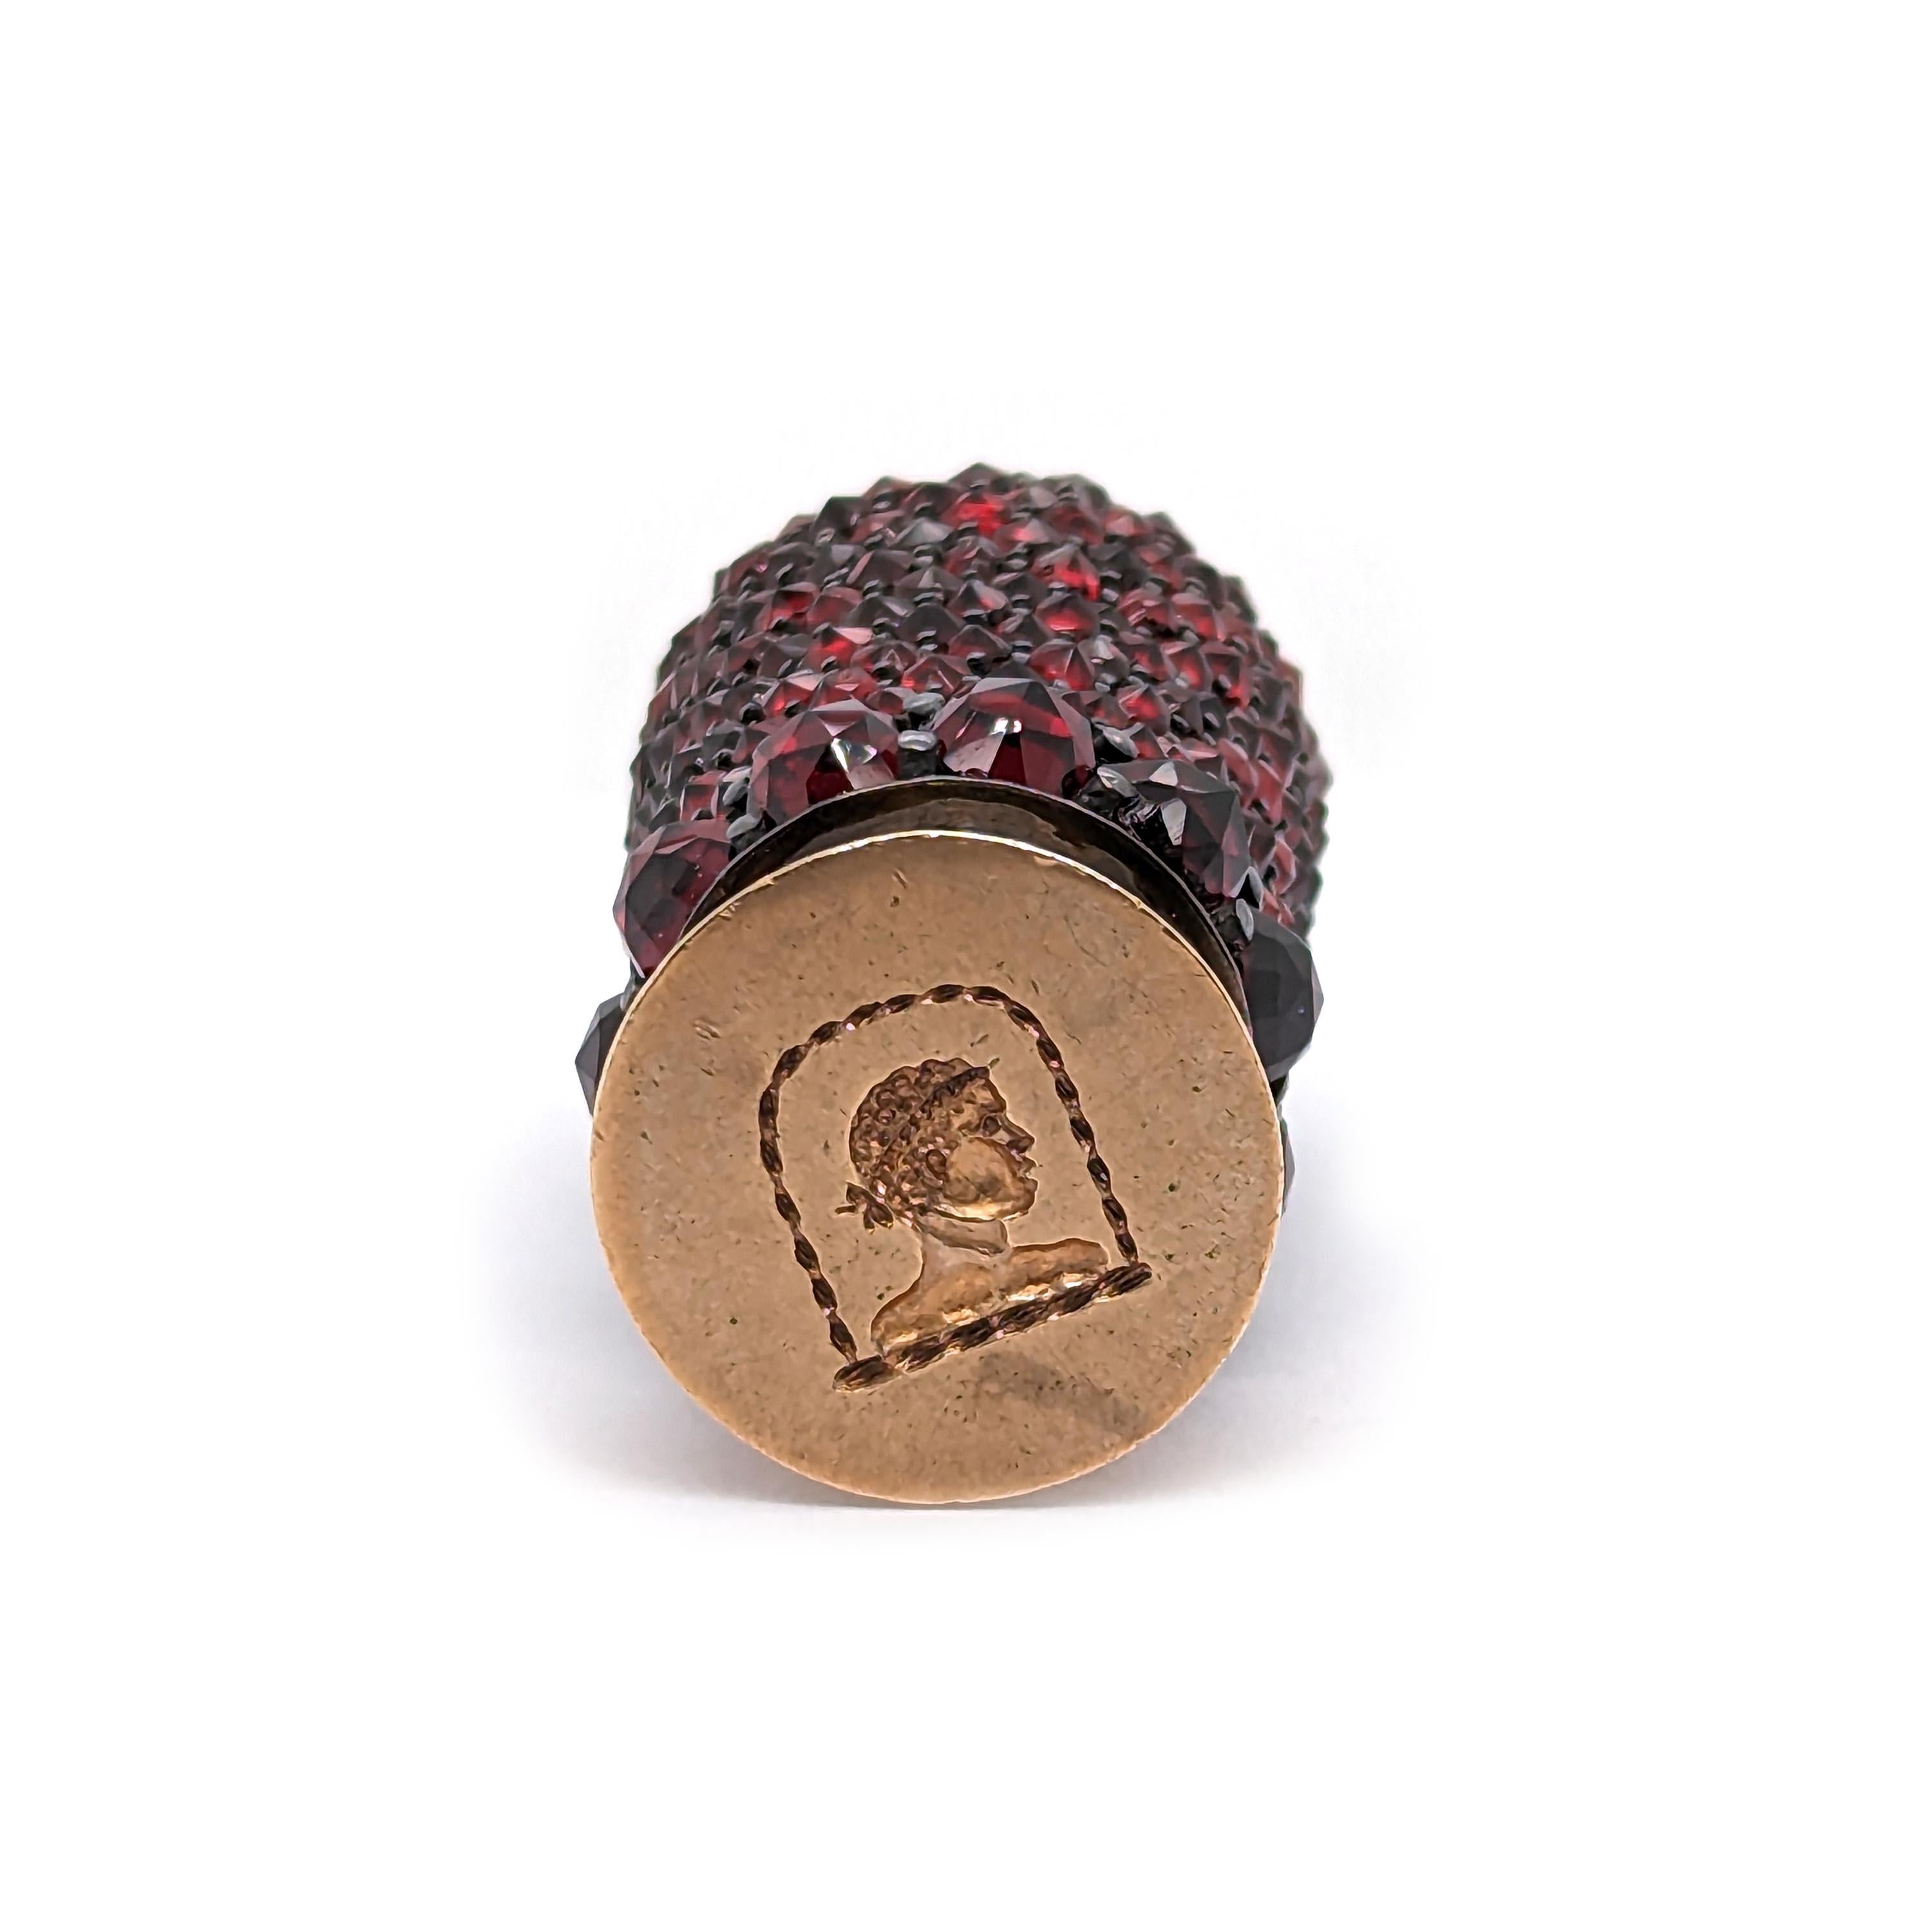 Antikes granatbesetztes Schreibtischsiegel, mit pavébesetzten Granaten im Rosenschliff am Griff, in Silber montiert, mit einem goldenen Siegel, eingraviert mit dem Kopf eines Mannes mit römischer Frisur, um 1850.